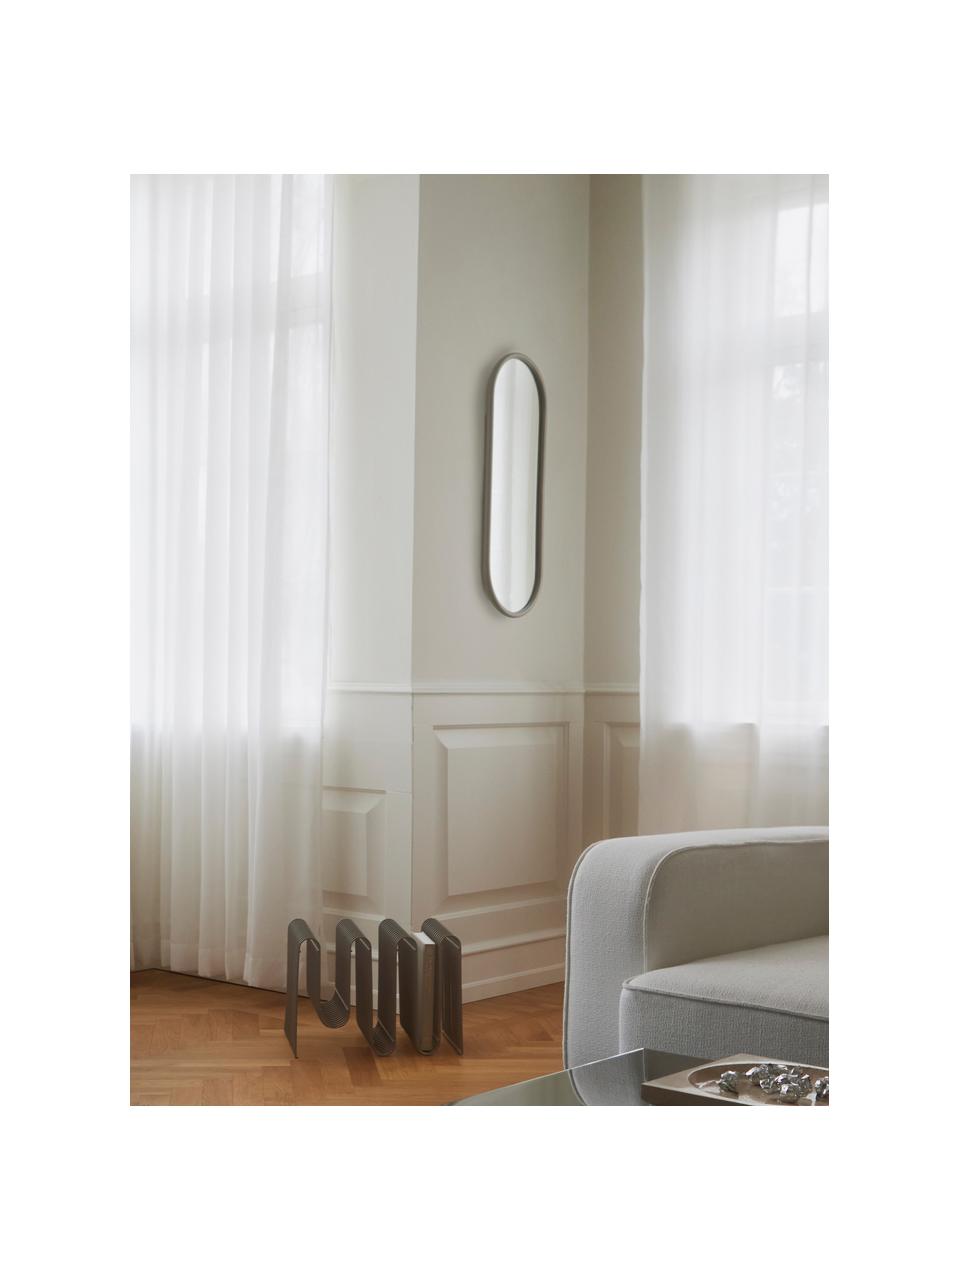 Ovaler Wandspiegel Angui, Spiegelfläche: Spiegelglas, Rahmen: Stahl, beschichtet, Silberfarben, B 29 x H 78 cm